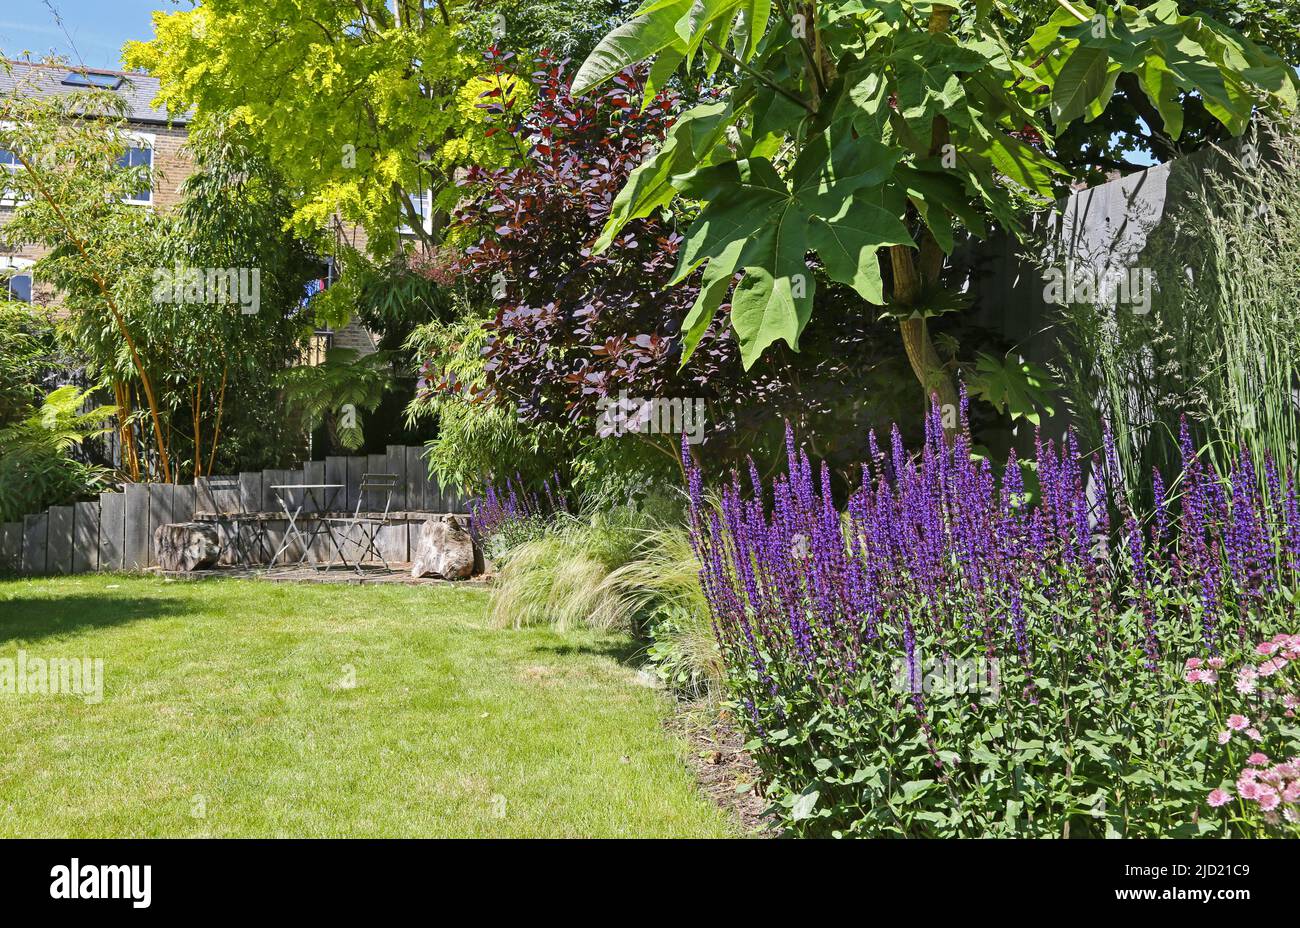 Ein pflanzengefüllter Garten in South London, Großbritannien. Zeigt Holzsitzbereich und Bambus (links), Rasen, Ziergräser und lila Salvia nemorosa. Stockfoto